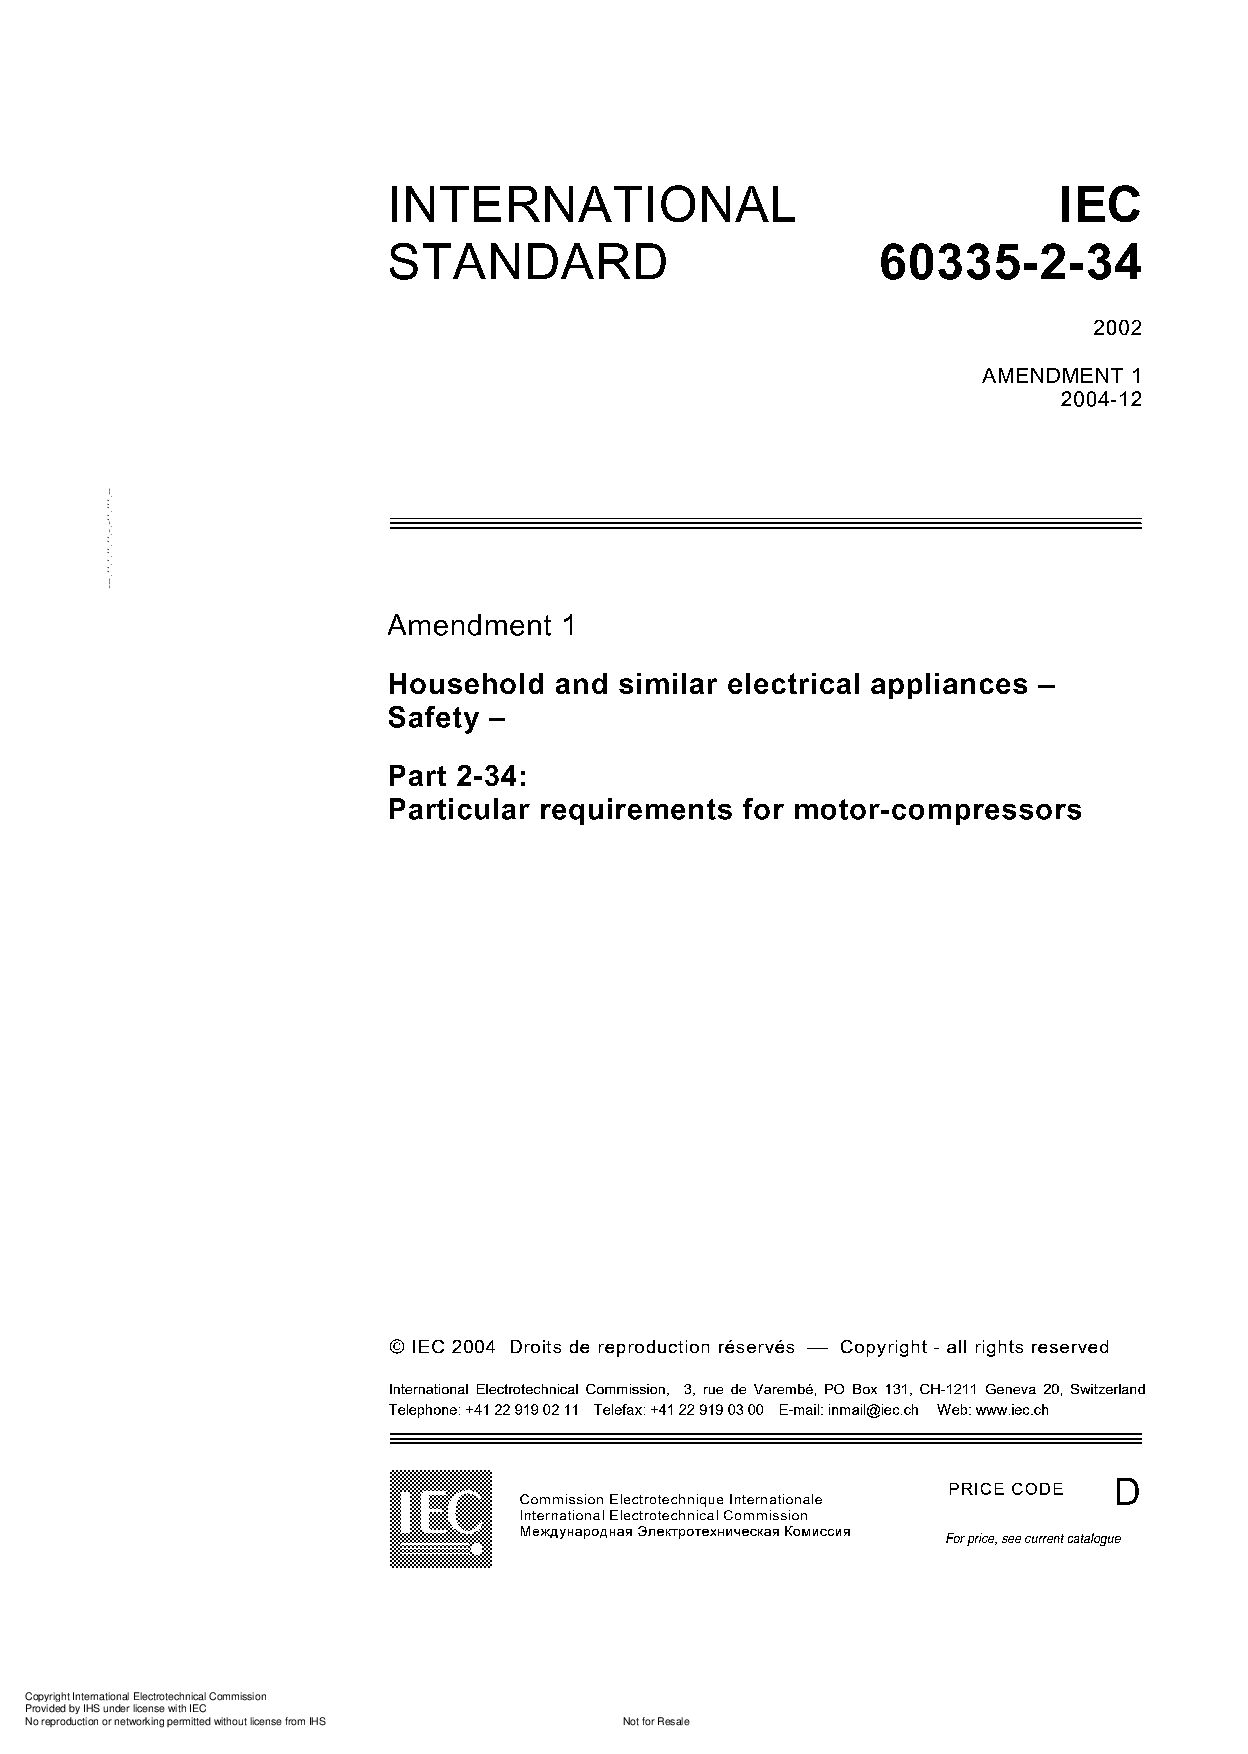 IEC 60335-2-34:2002